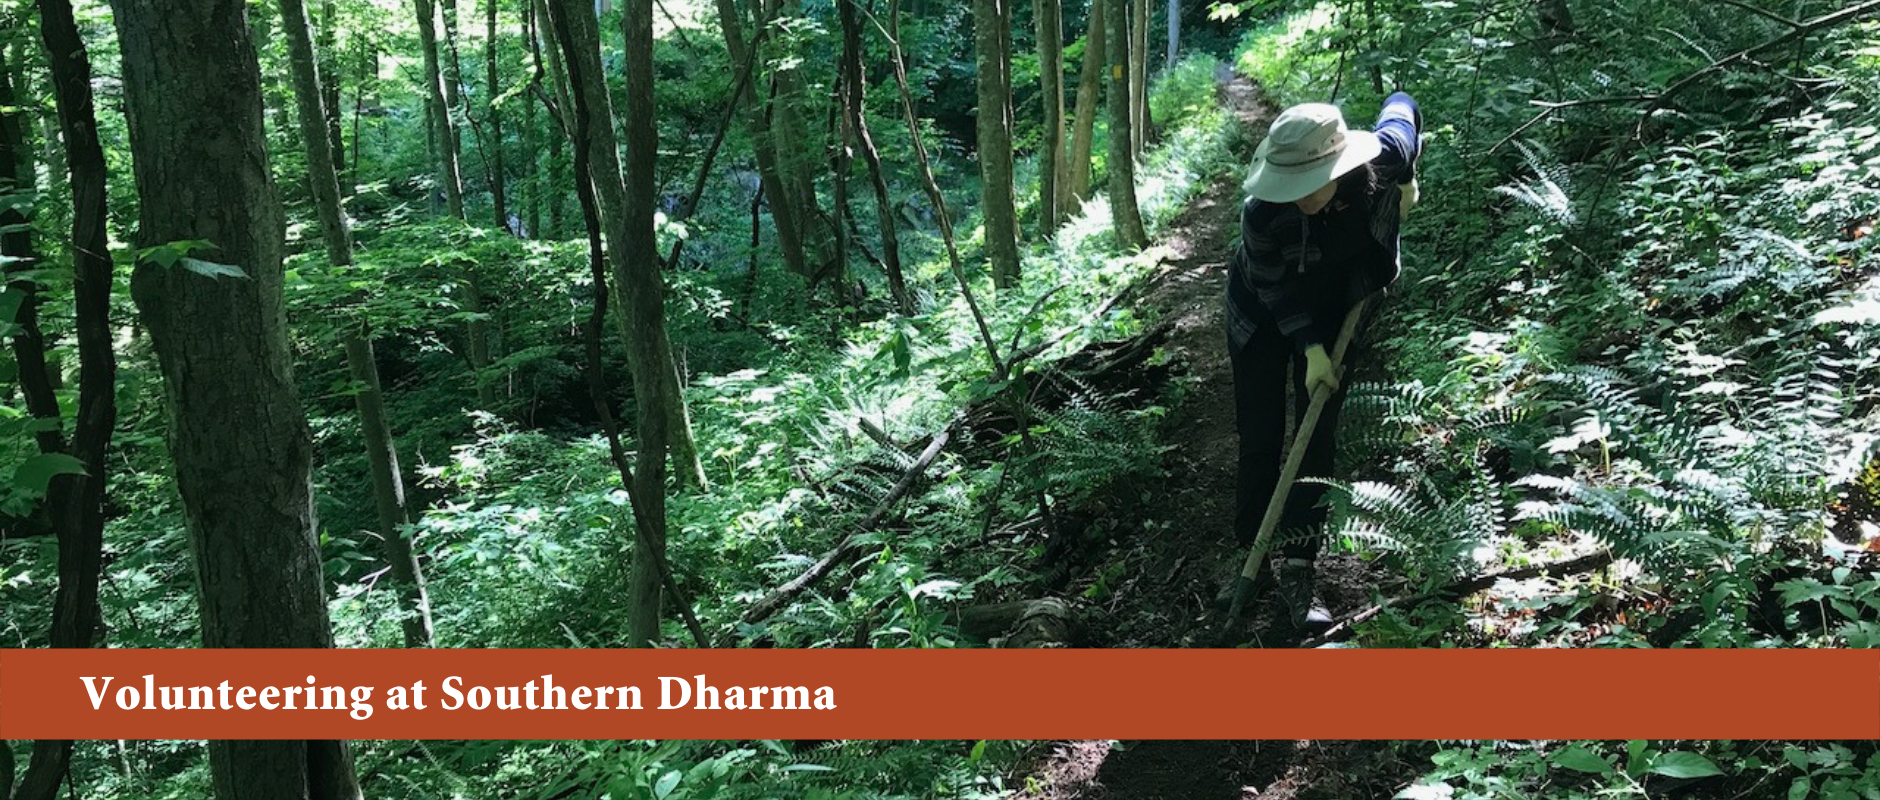 Volunteering at Southern Dharma